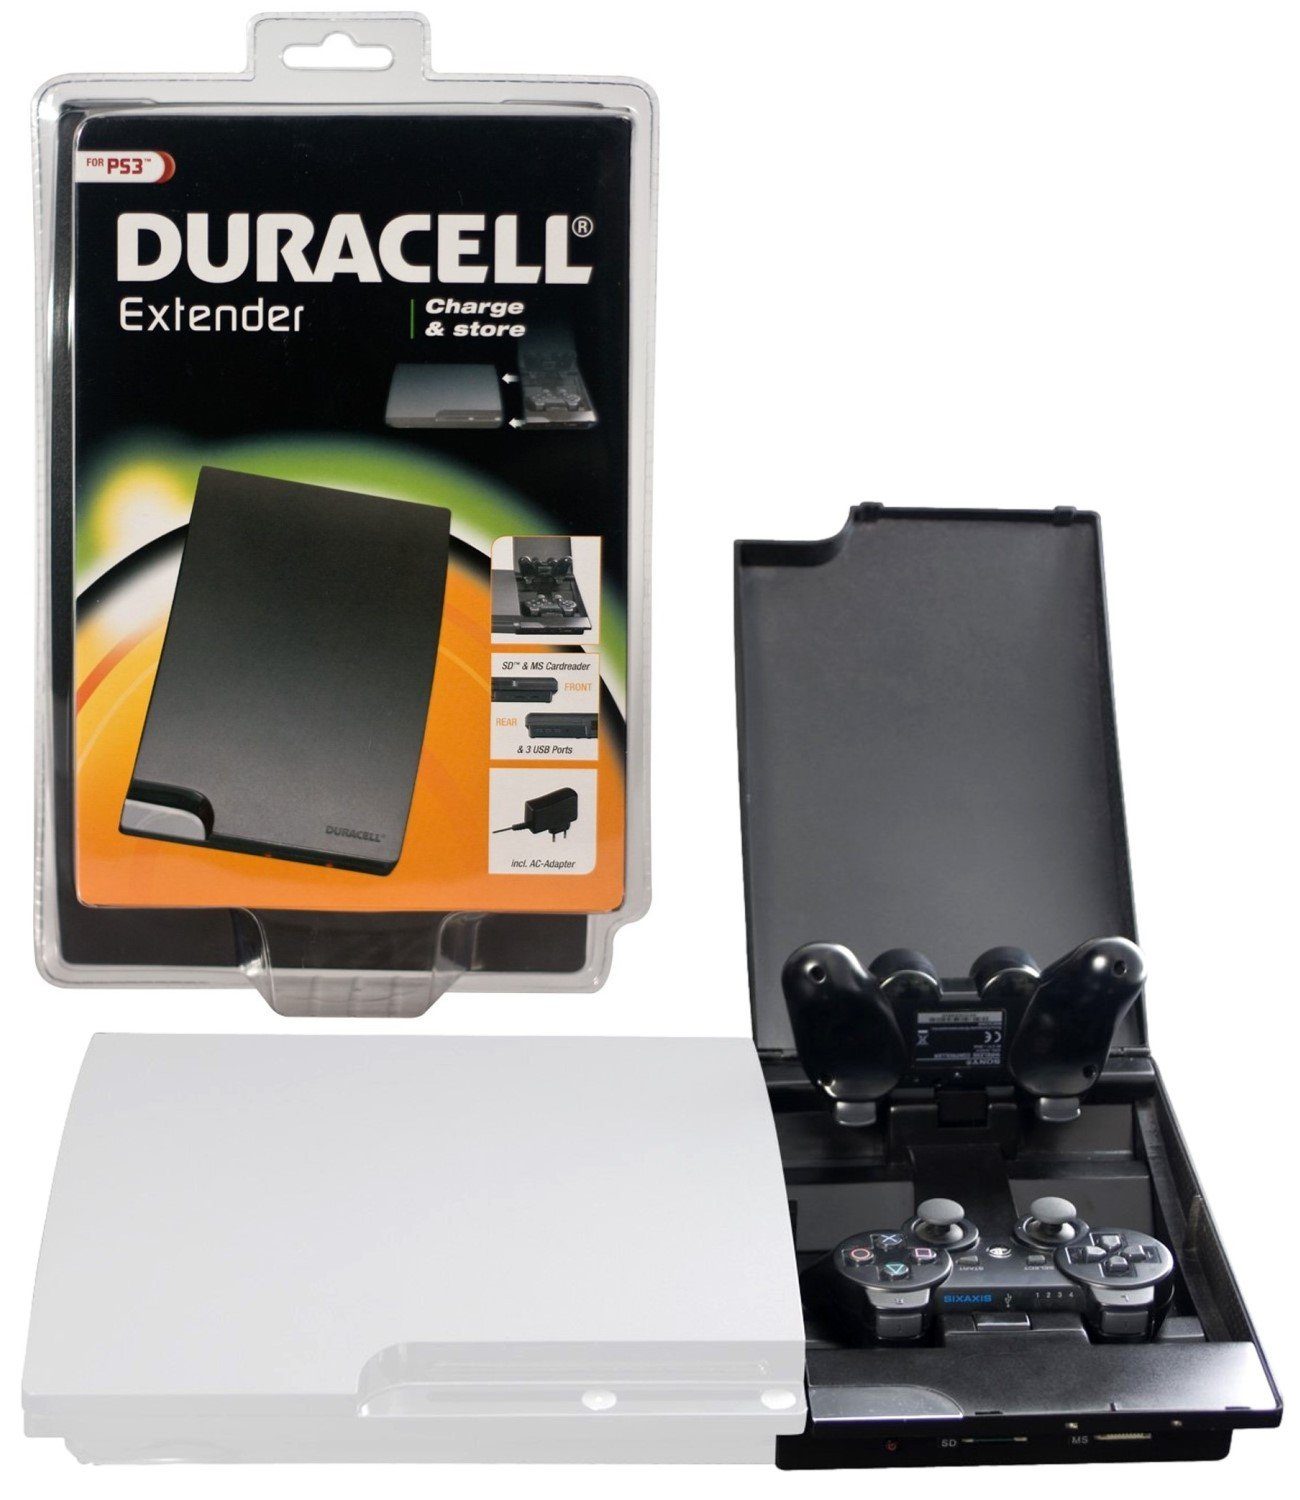 Duracell Konsolen-Dockingstation Dual Ladestation Ladegerät Box Docking Dock, Netzlader mit USB-Hub + Kartenleser für PS3 Slim + Wireless Controller